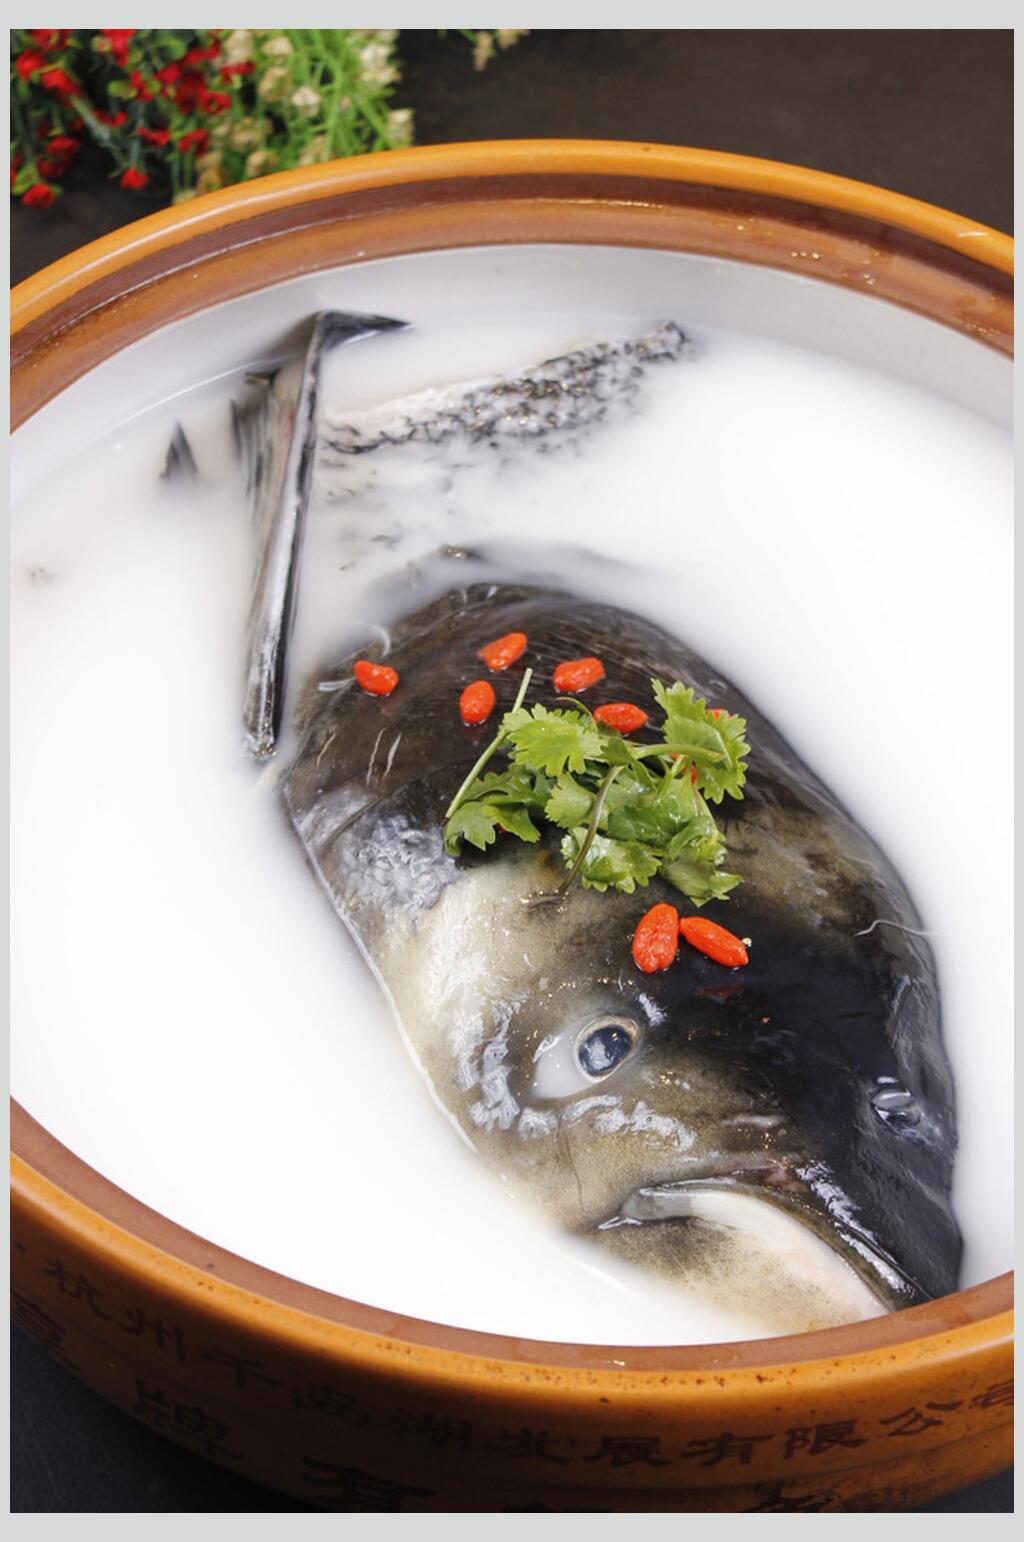 千岛湖鱼头 海报图片